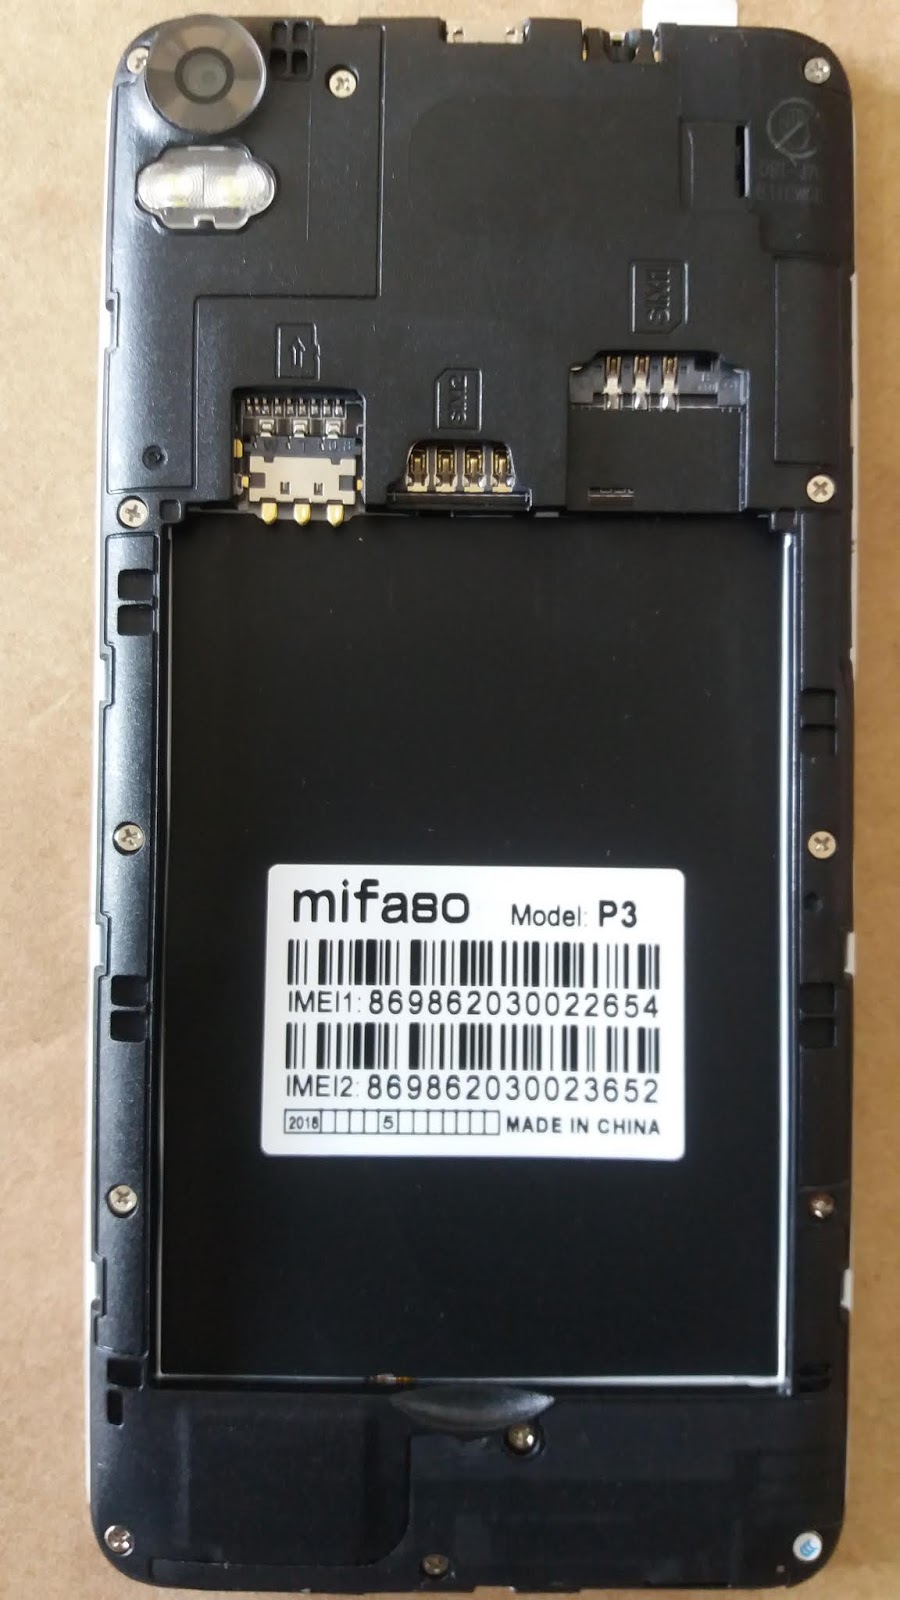 Mifaso P3 Flash File